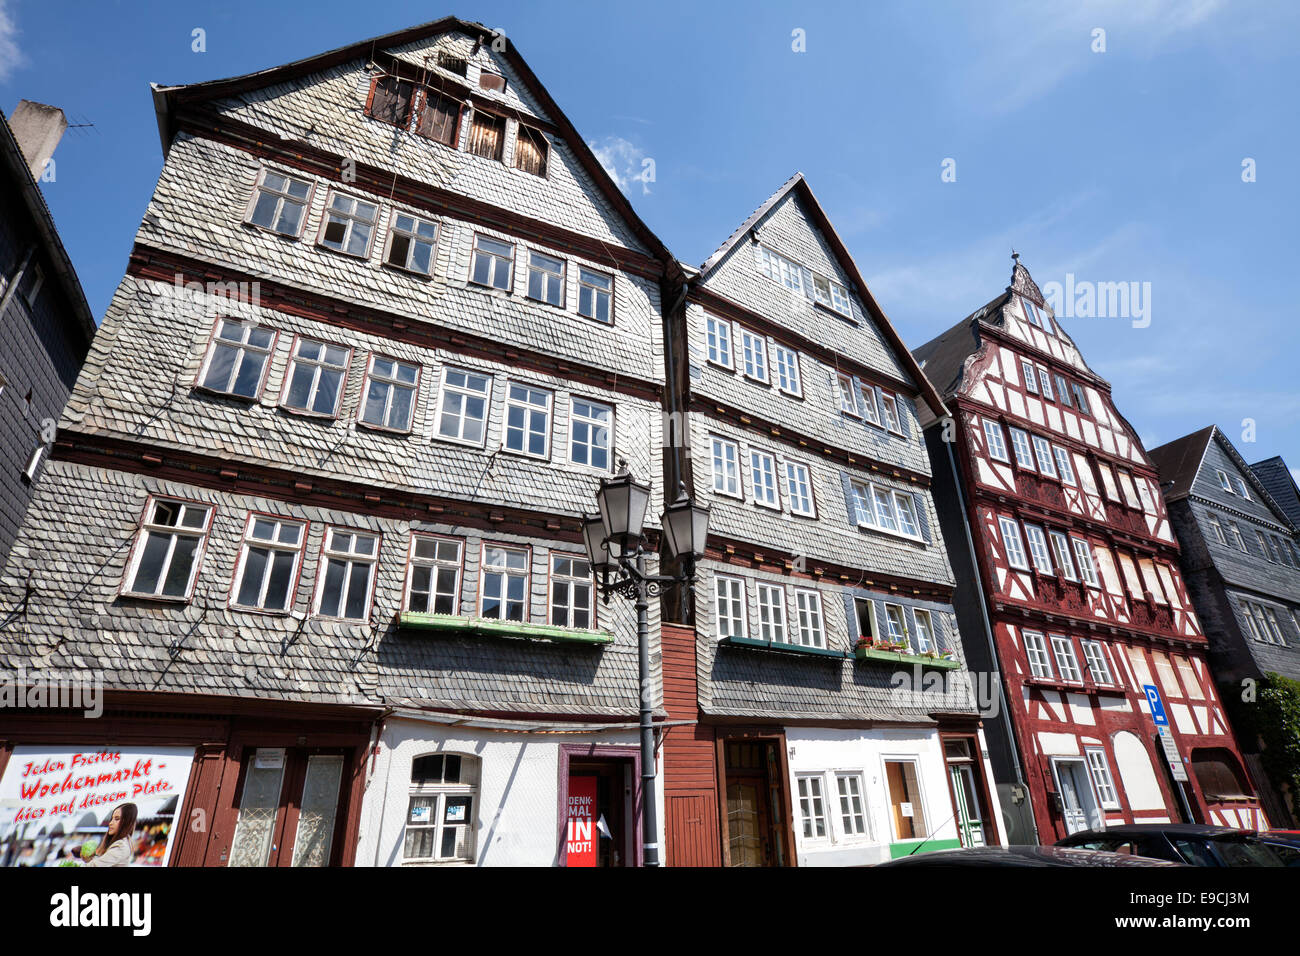 Restauré et pas encore maisons restaurées, marché des céréales, Kornmarkt vieille ville historique de Herborn, Hesse, Germany, Europe Banque D'Images